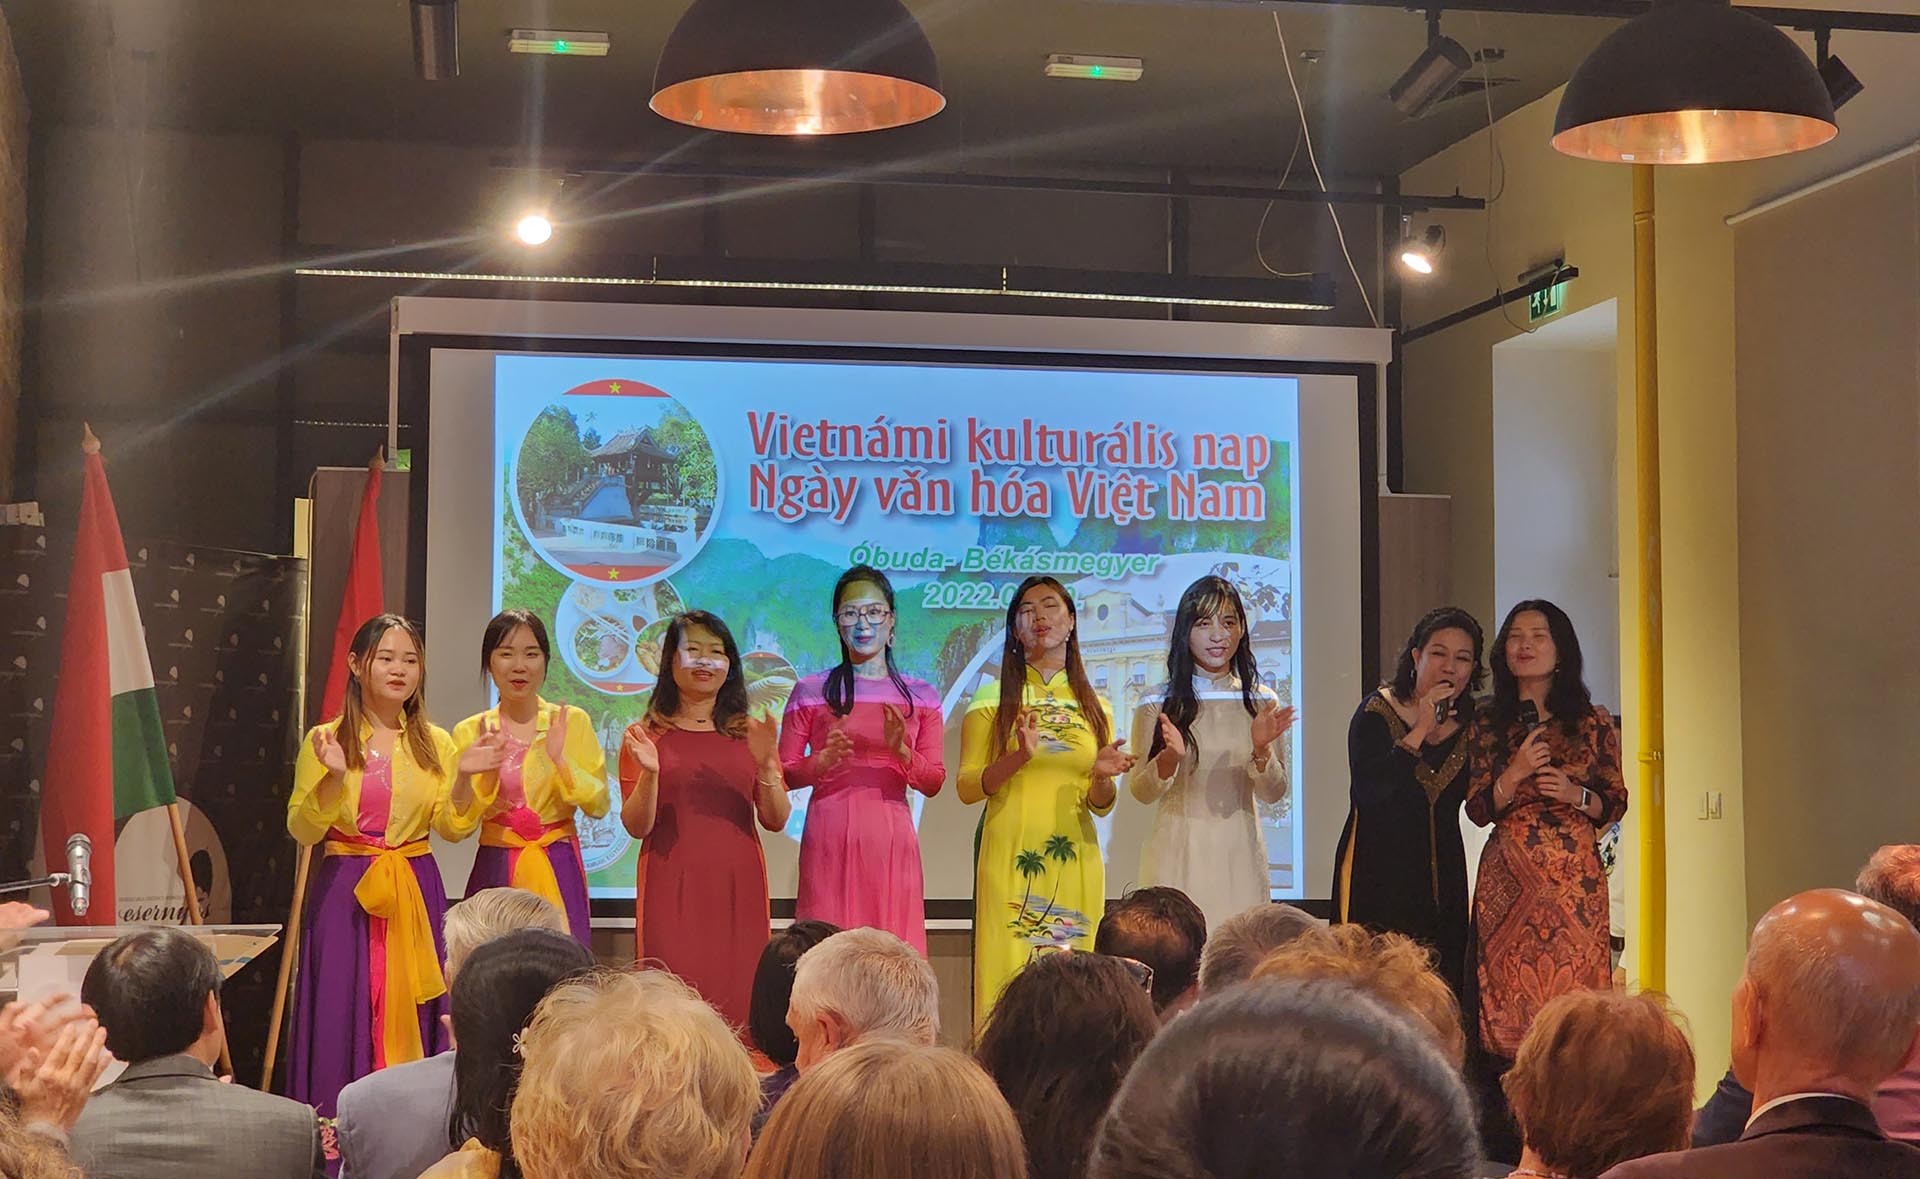 Khai mạc Tuần văn hóa Việt Nam năm 2022 tại Hungary